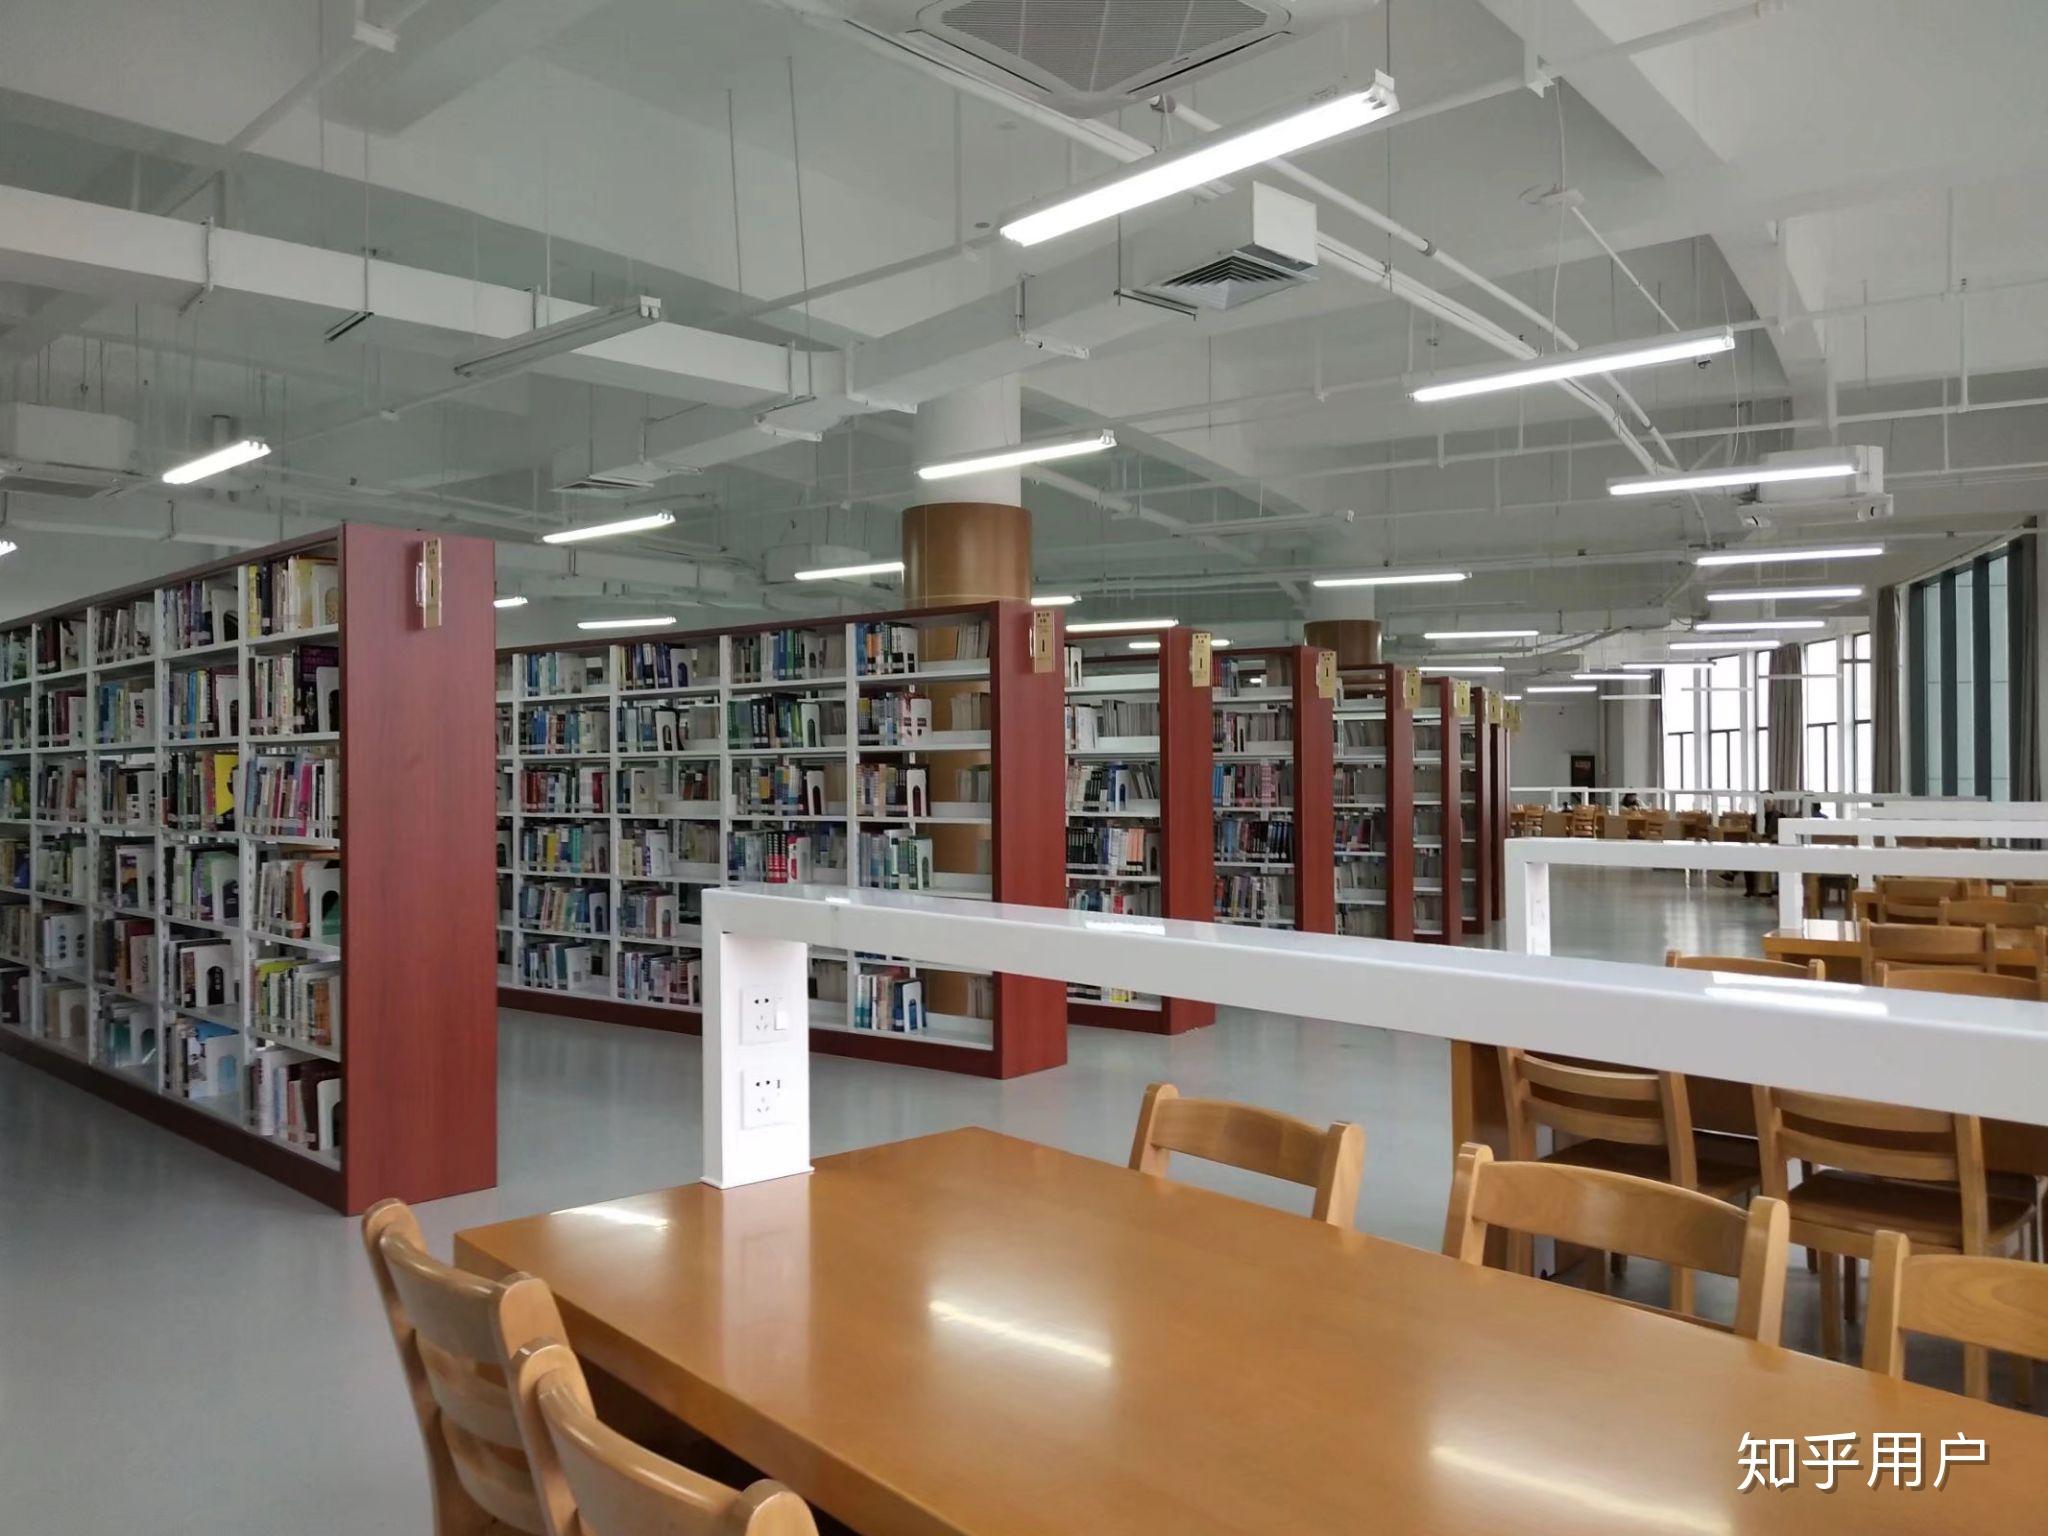 安康学院的图书馆或教室环境如何?是否适合上自习? 